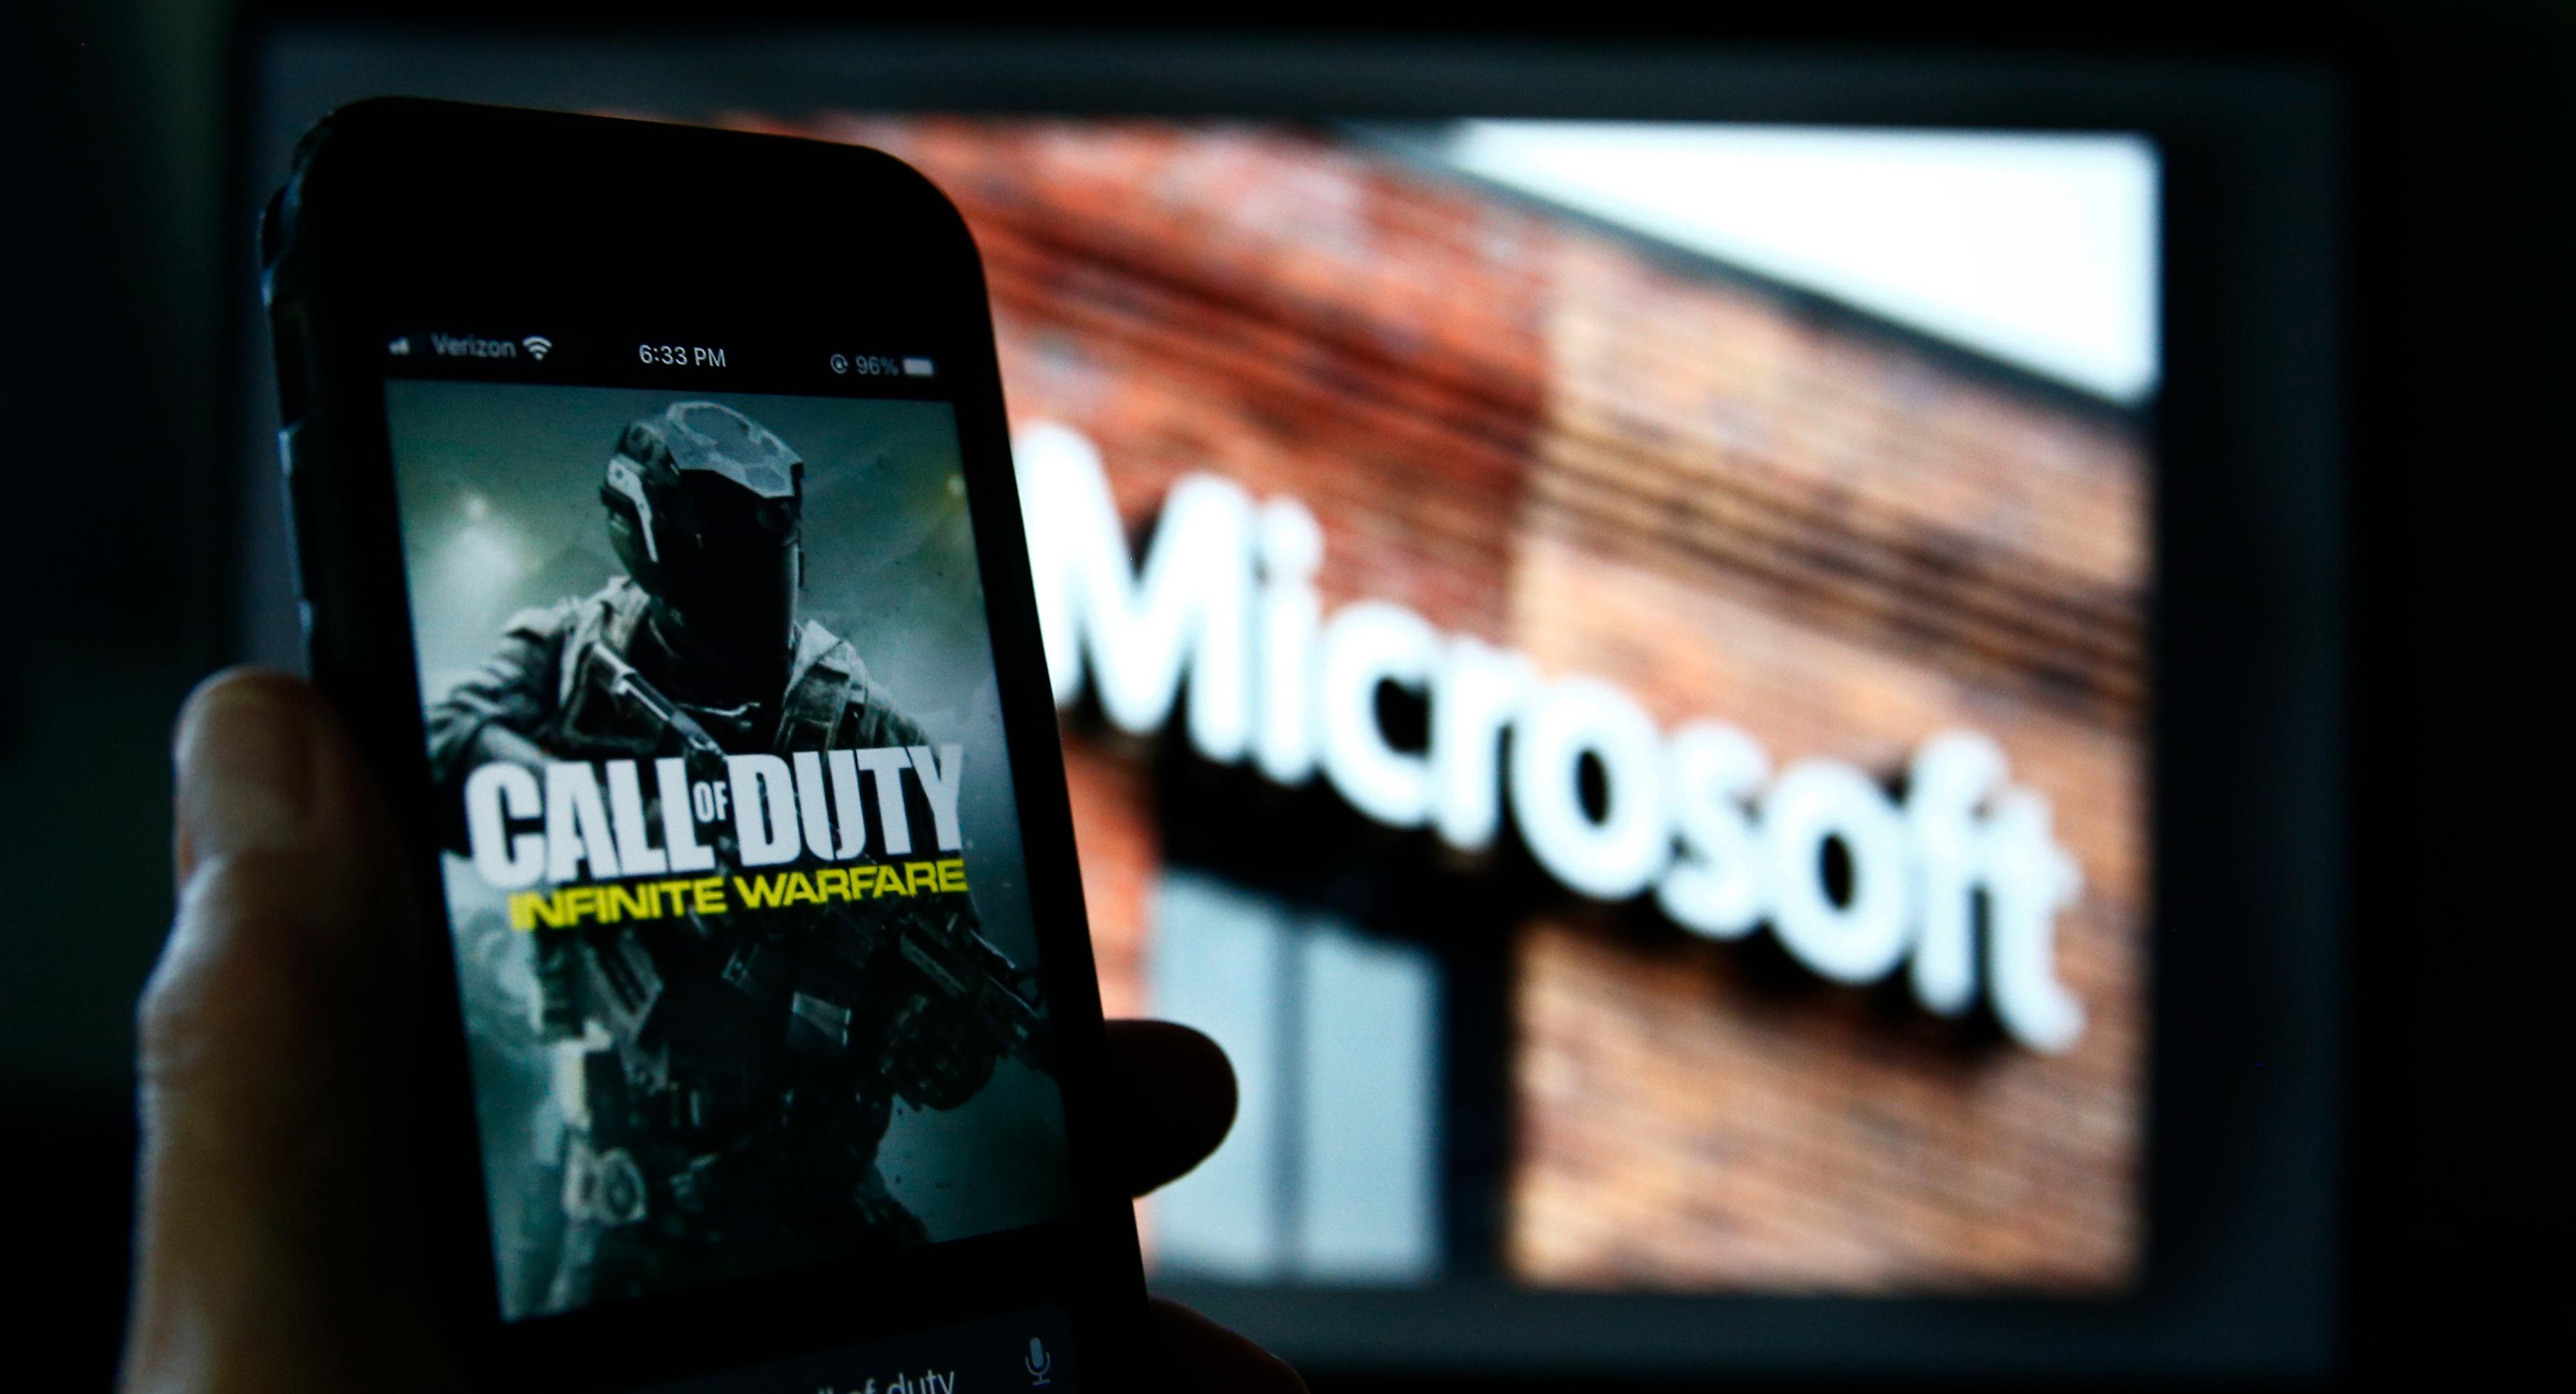 Gigantoppkjøpet godkjent i USA – Microsoft seiret i retten